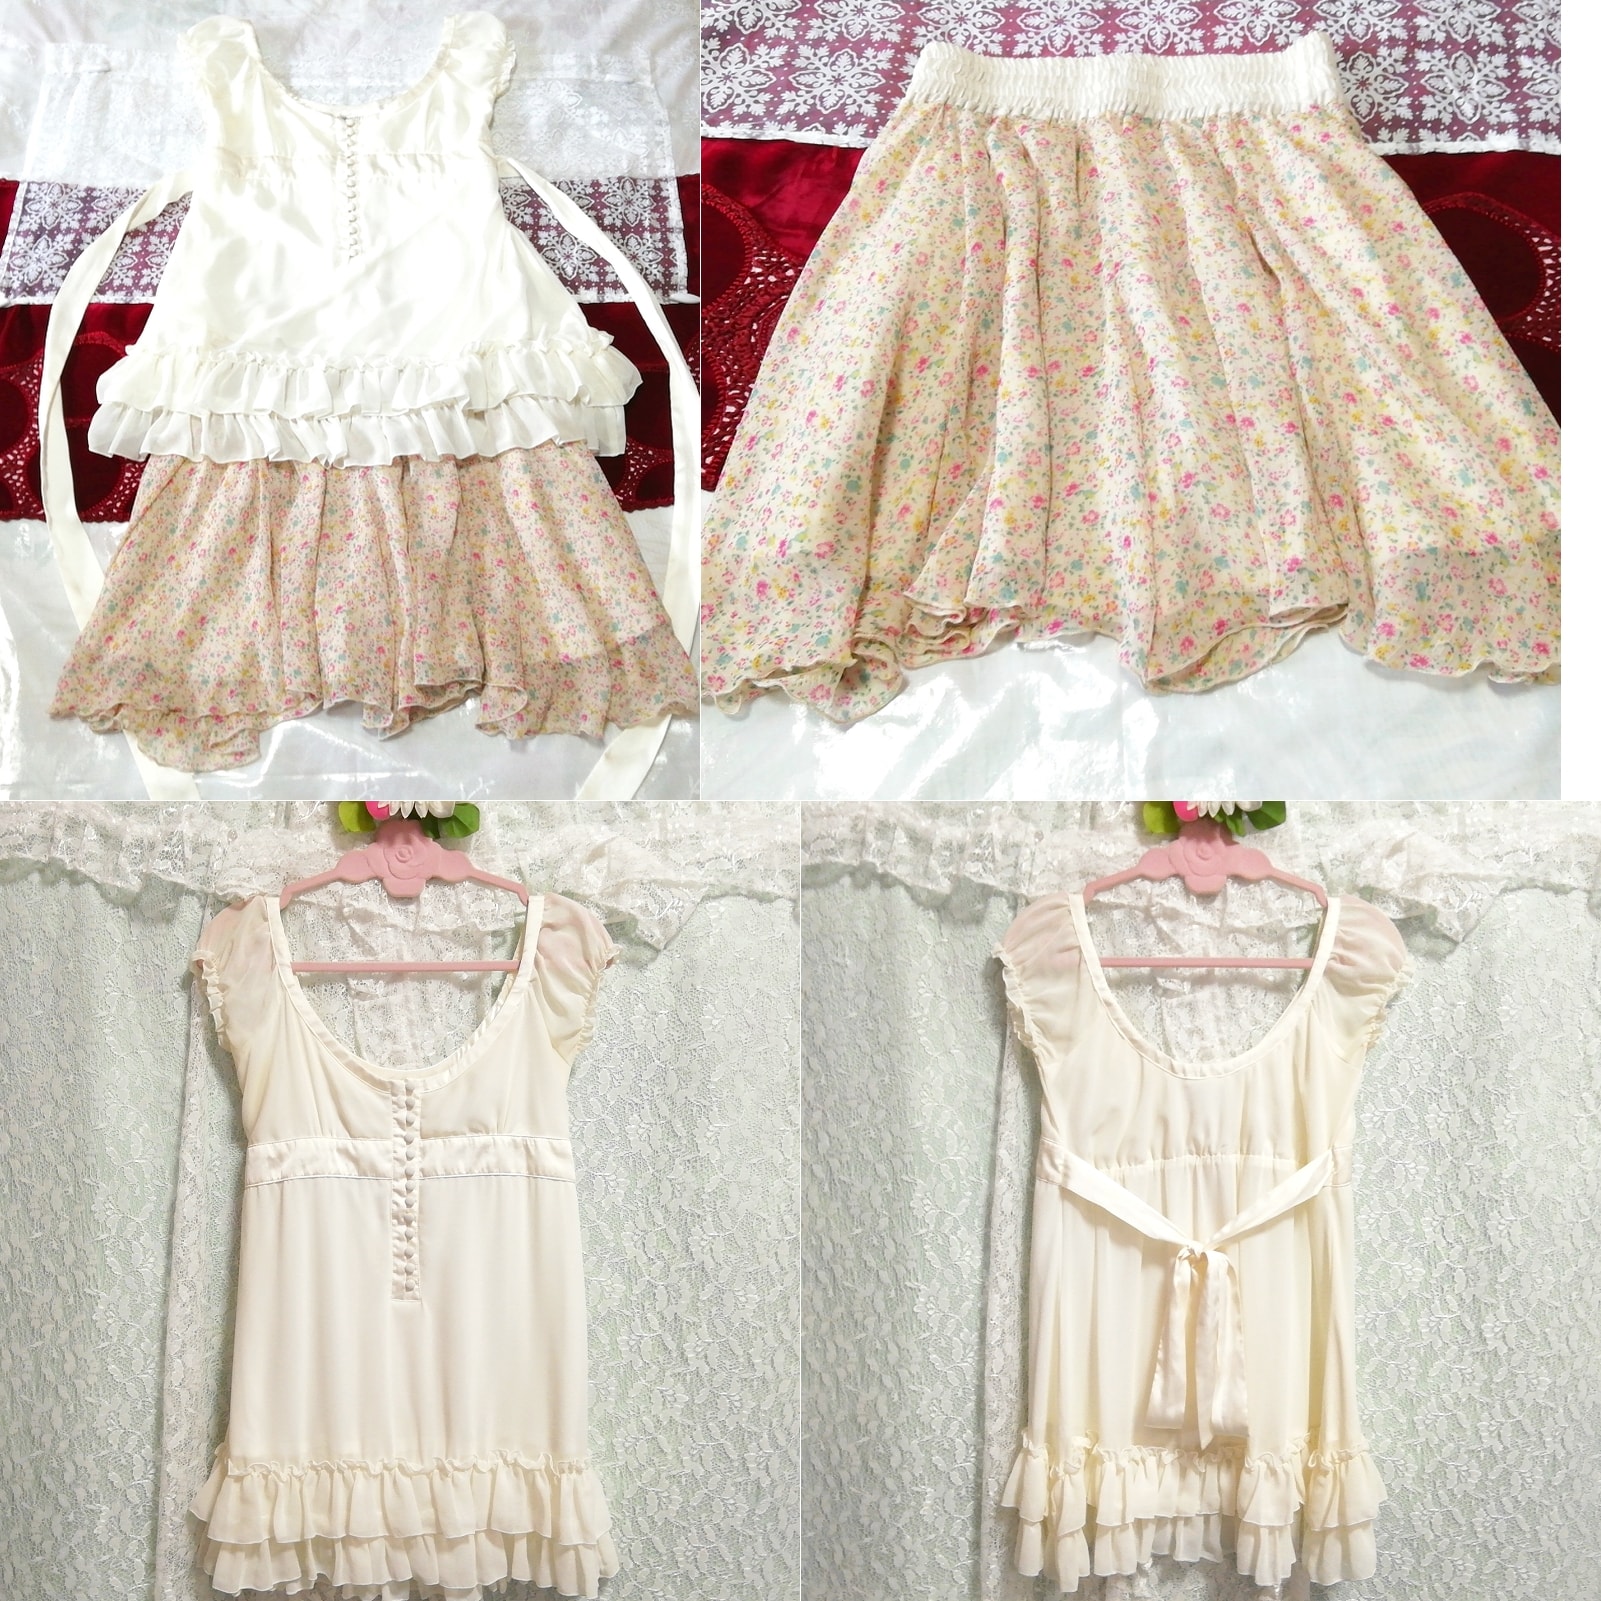 Weißes, ärmelloses Tunika-Negligé-Nachthemd aus Chiffon mit Blumenmuster, 2 Stk, Mode, Frauenmode, Nachtwäsche, Pyjama